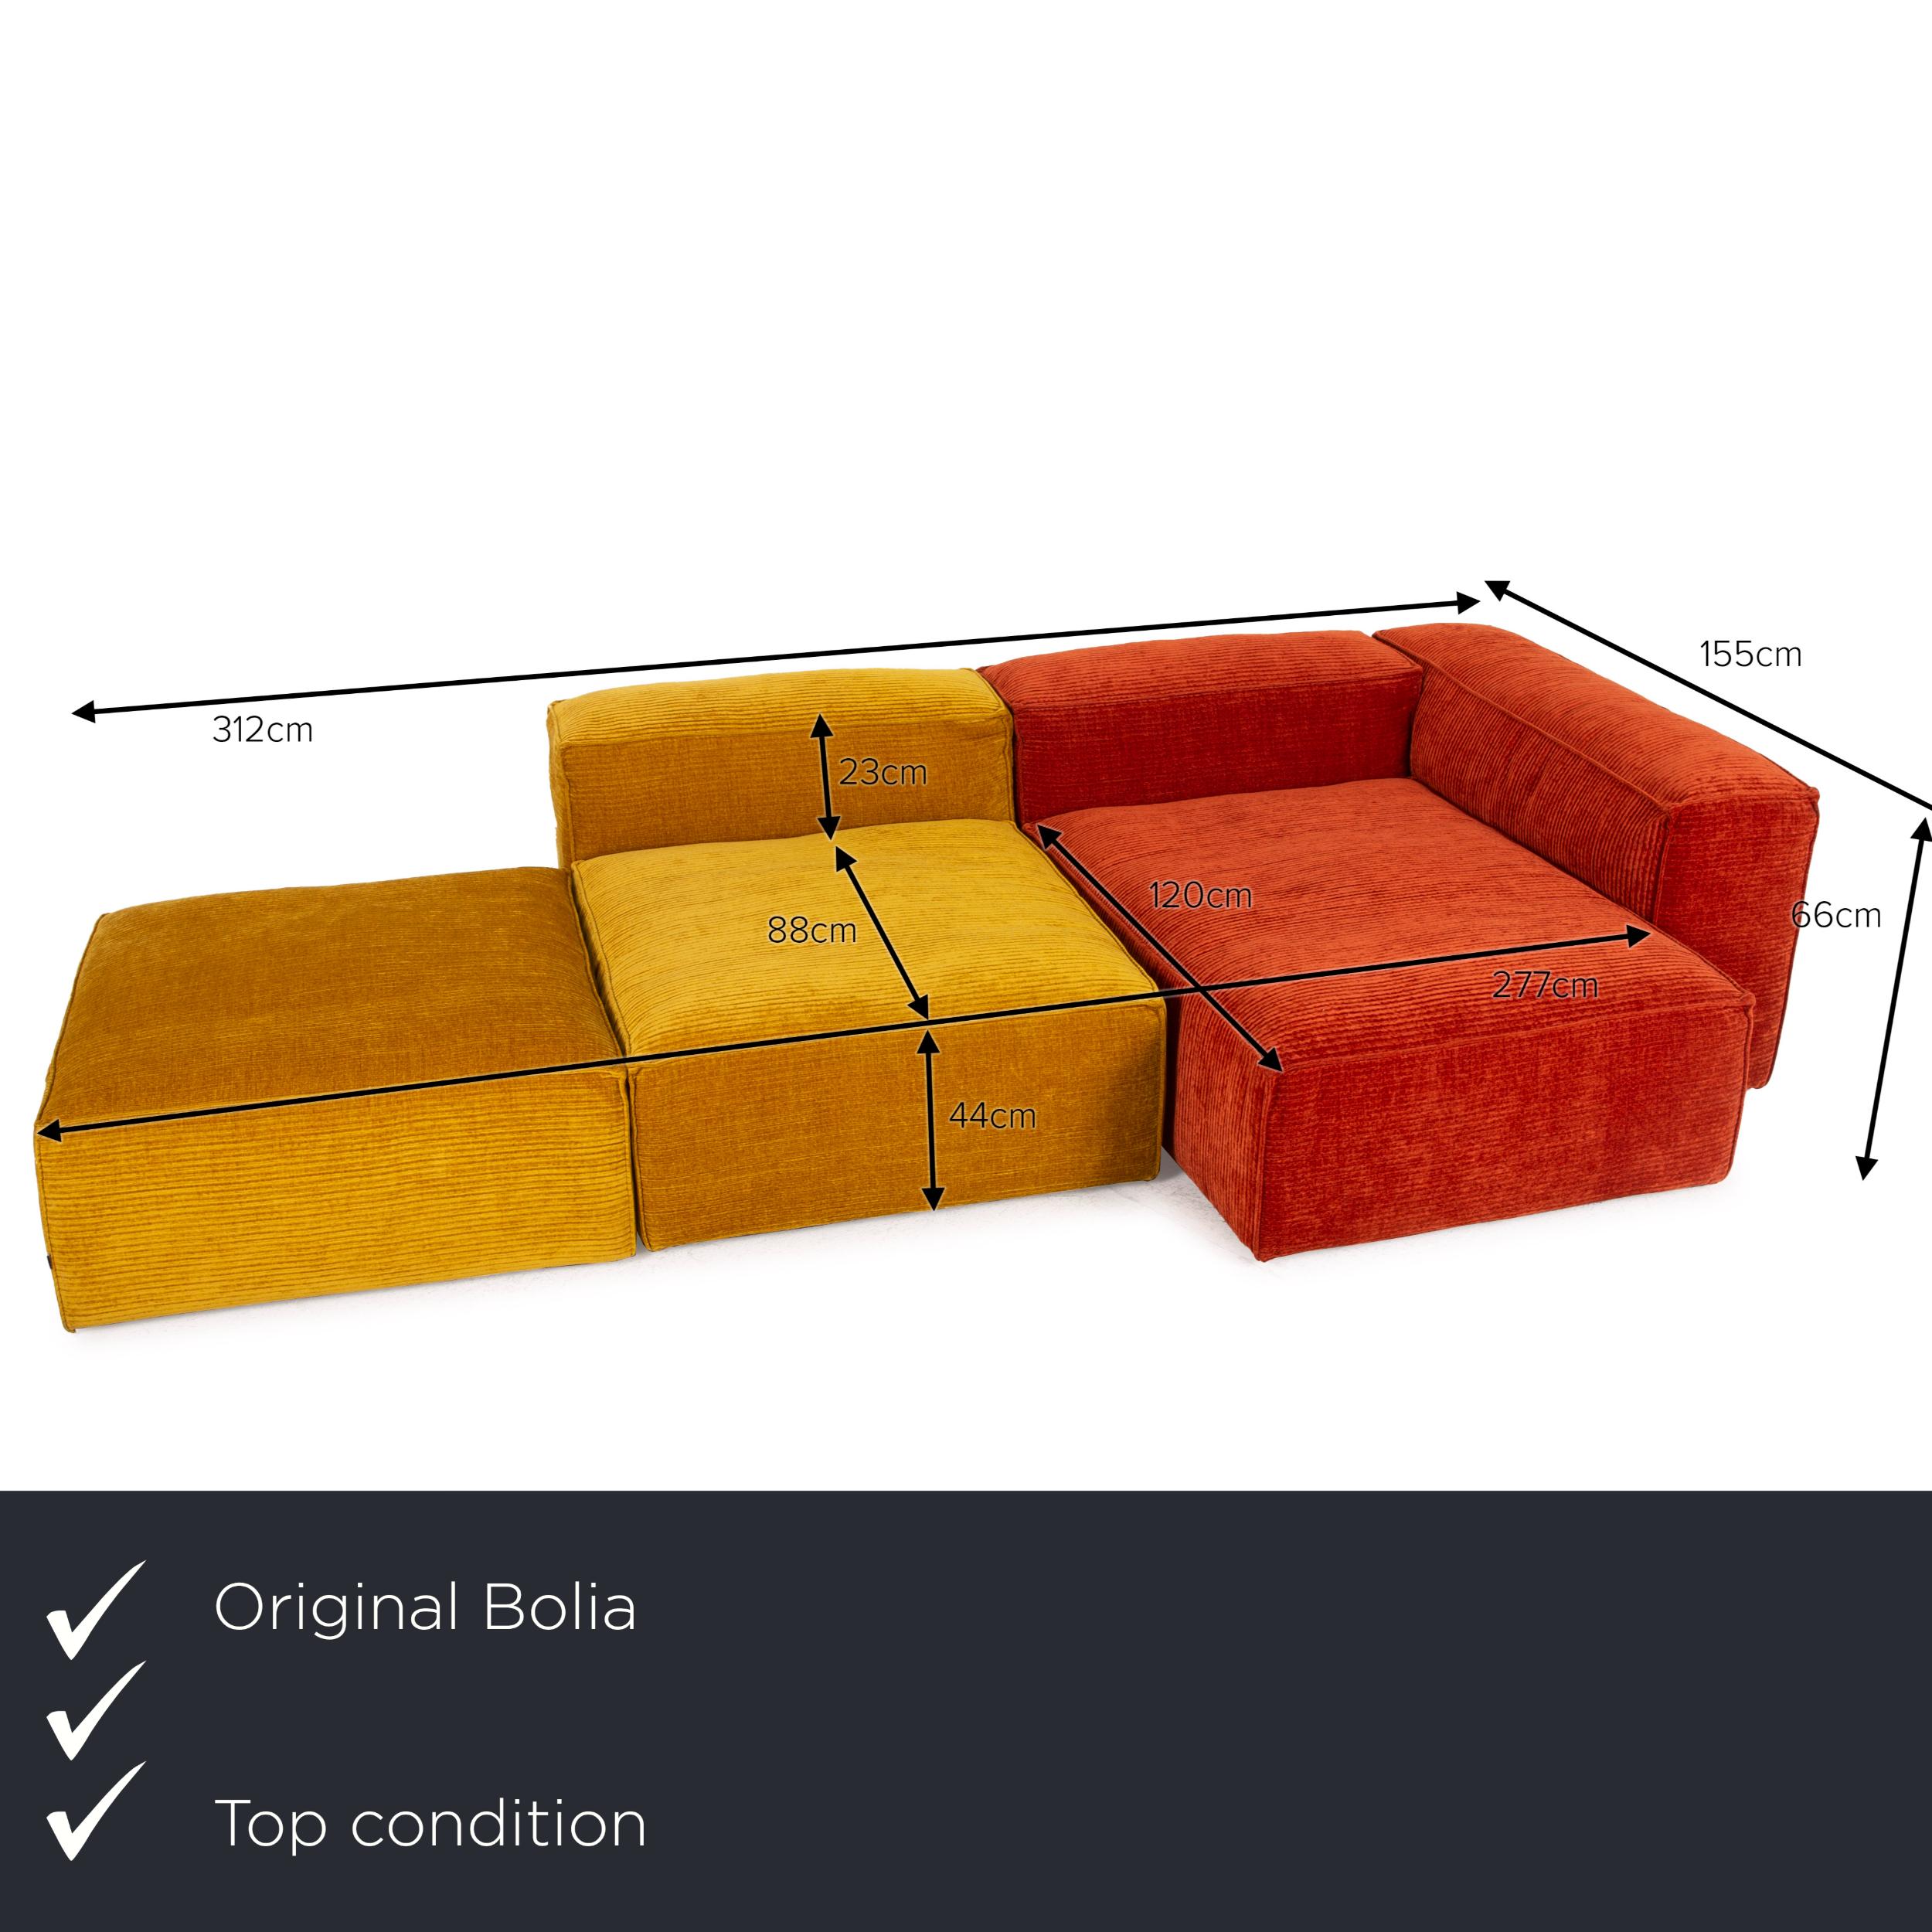 We present to you a Bolia cosima fabric sofa orange yellow corner sofa ottoman sofa combination.
 

 Product measurements in centimeters:
 

Depth: 155
Width: 312
Height: 66
Seat height: 44
Rest height: 66
Seat depth: 88
Seat width: